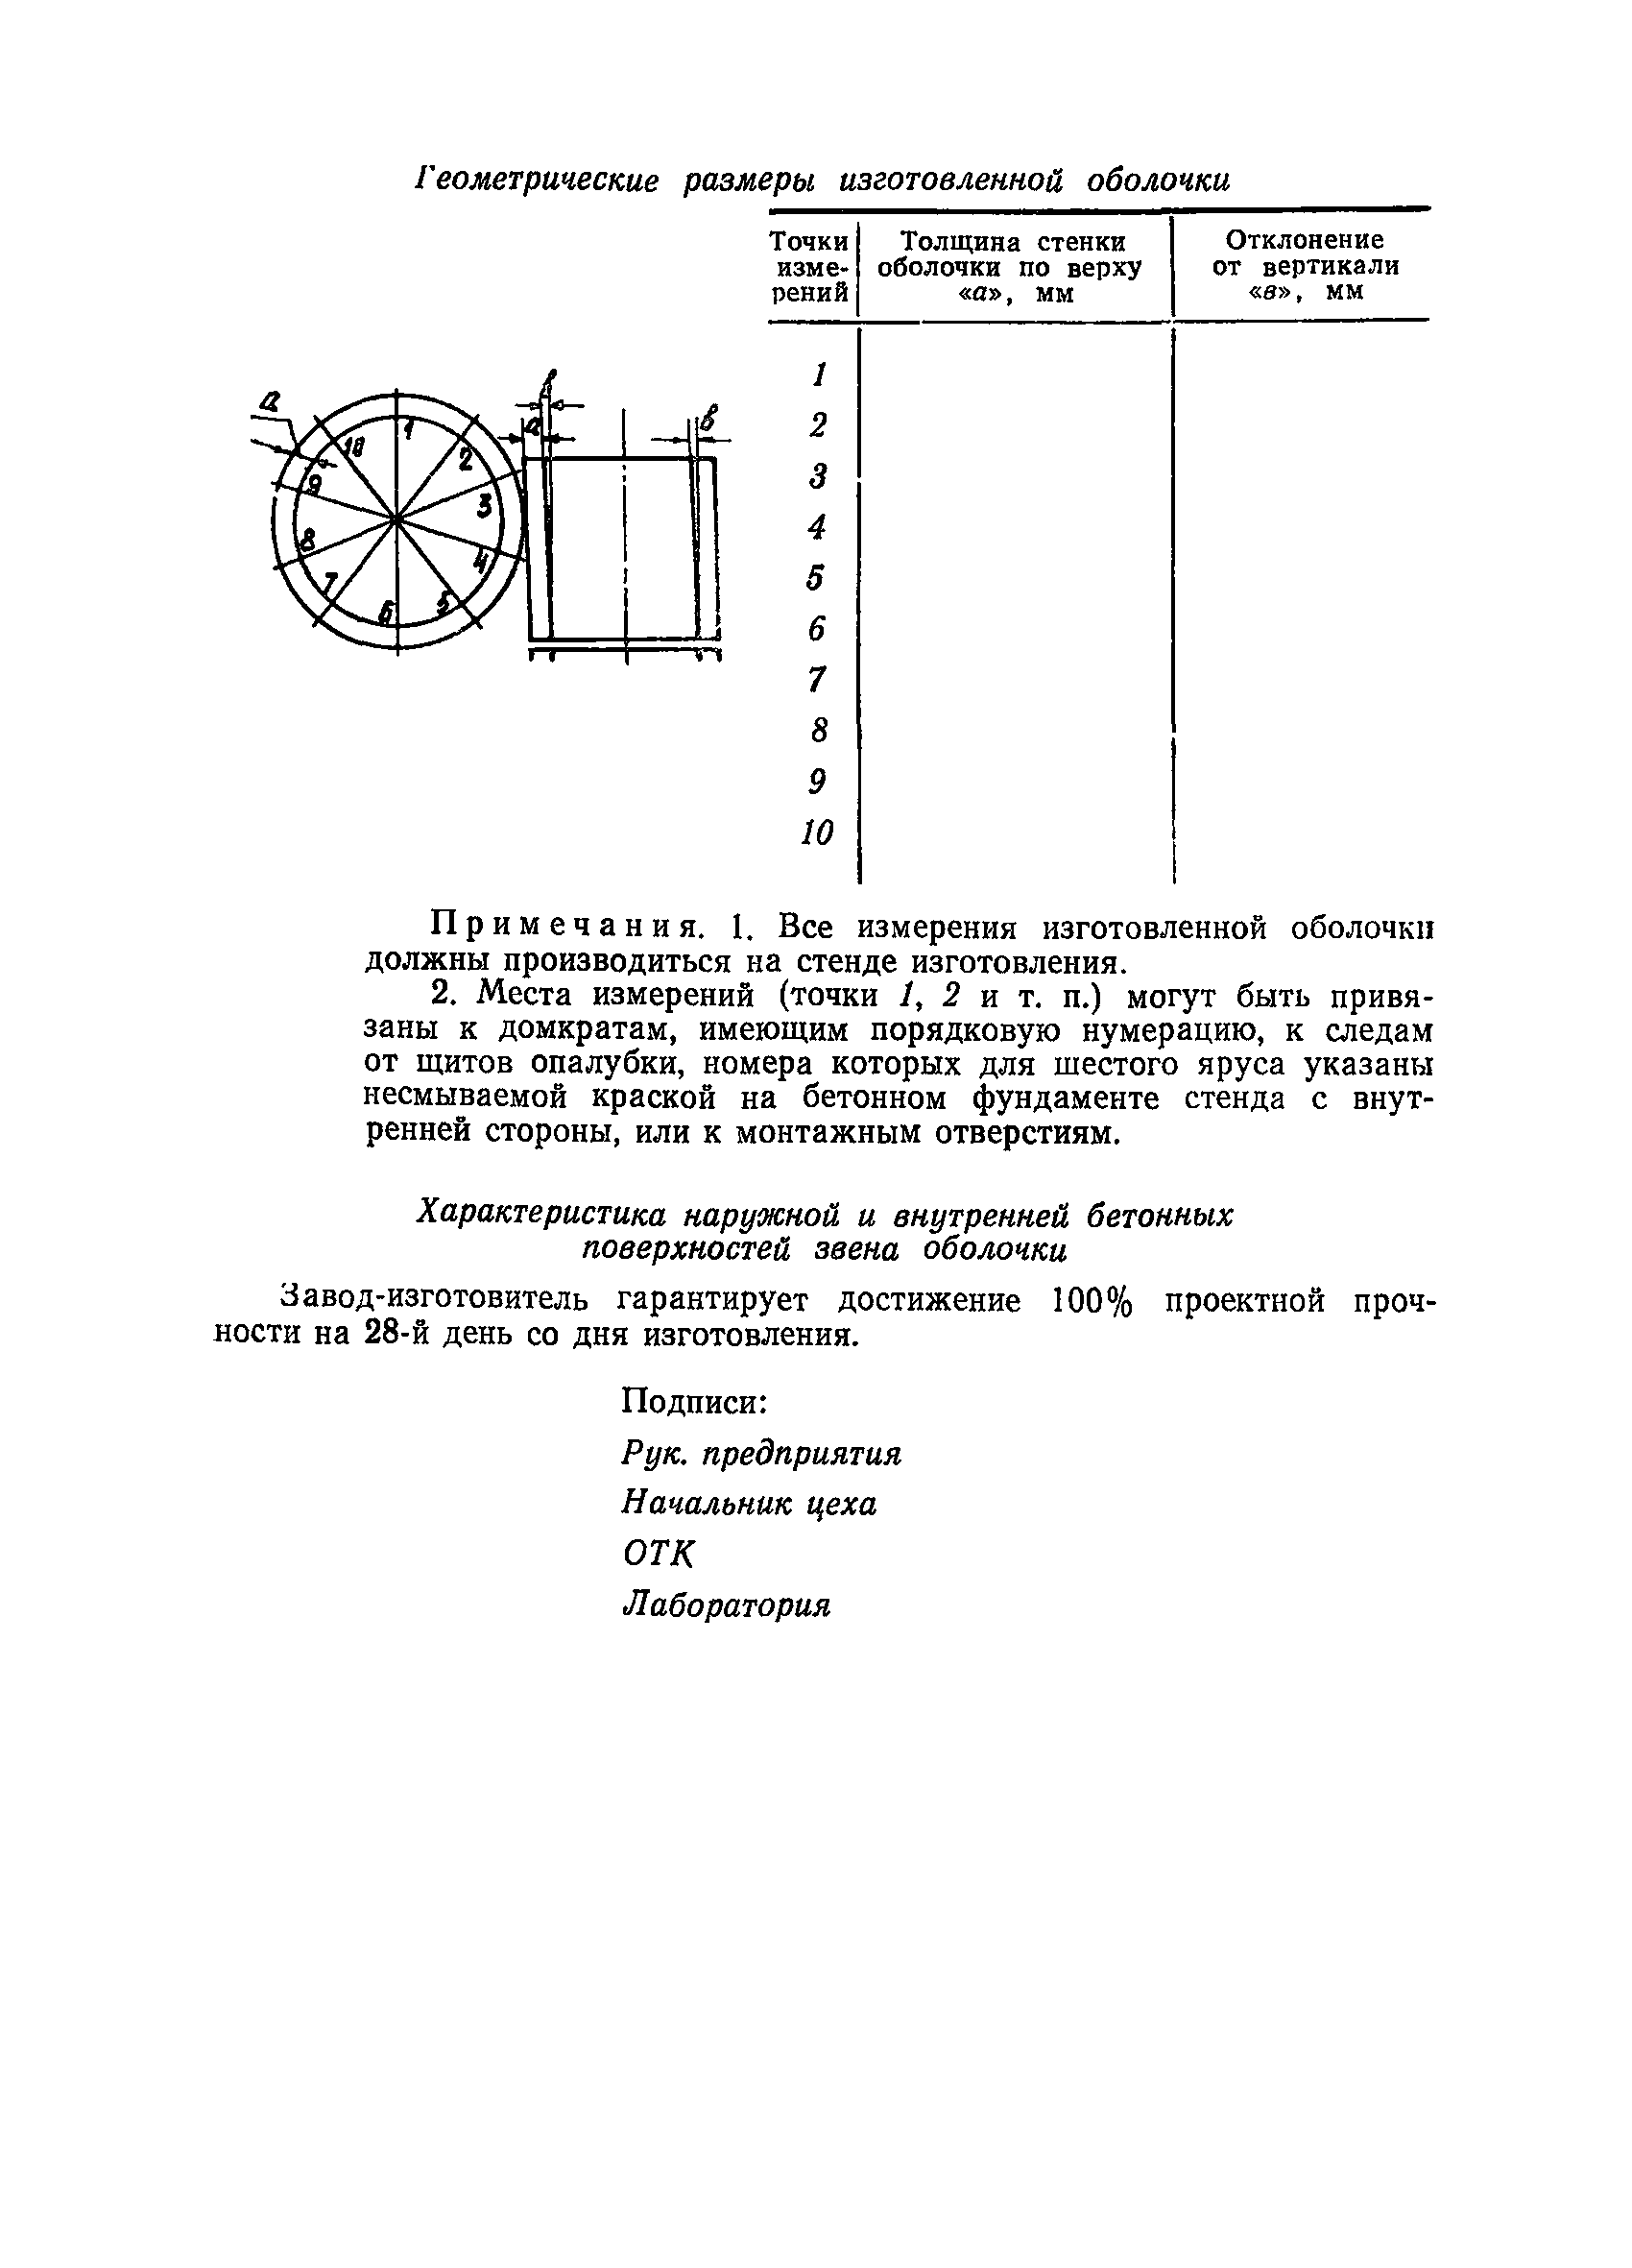 ВСН 34/XXII-78